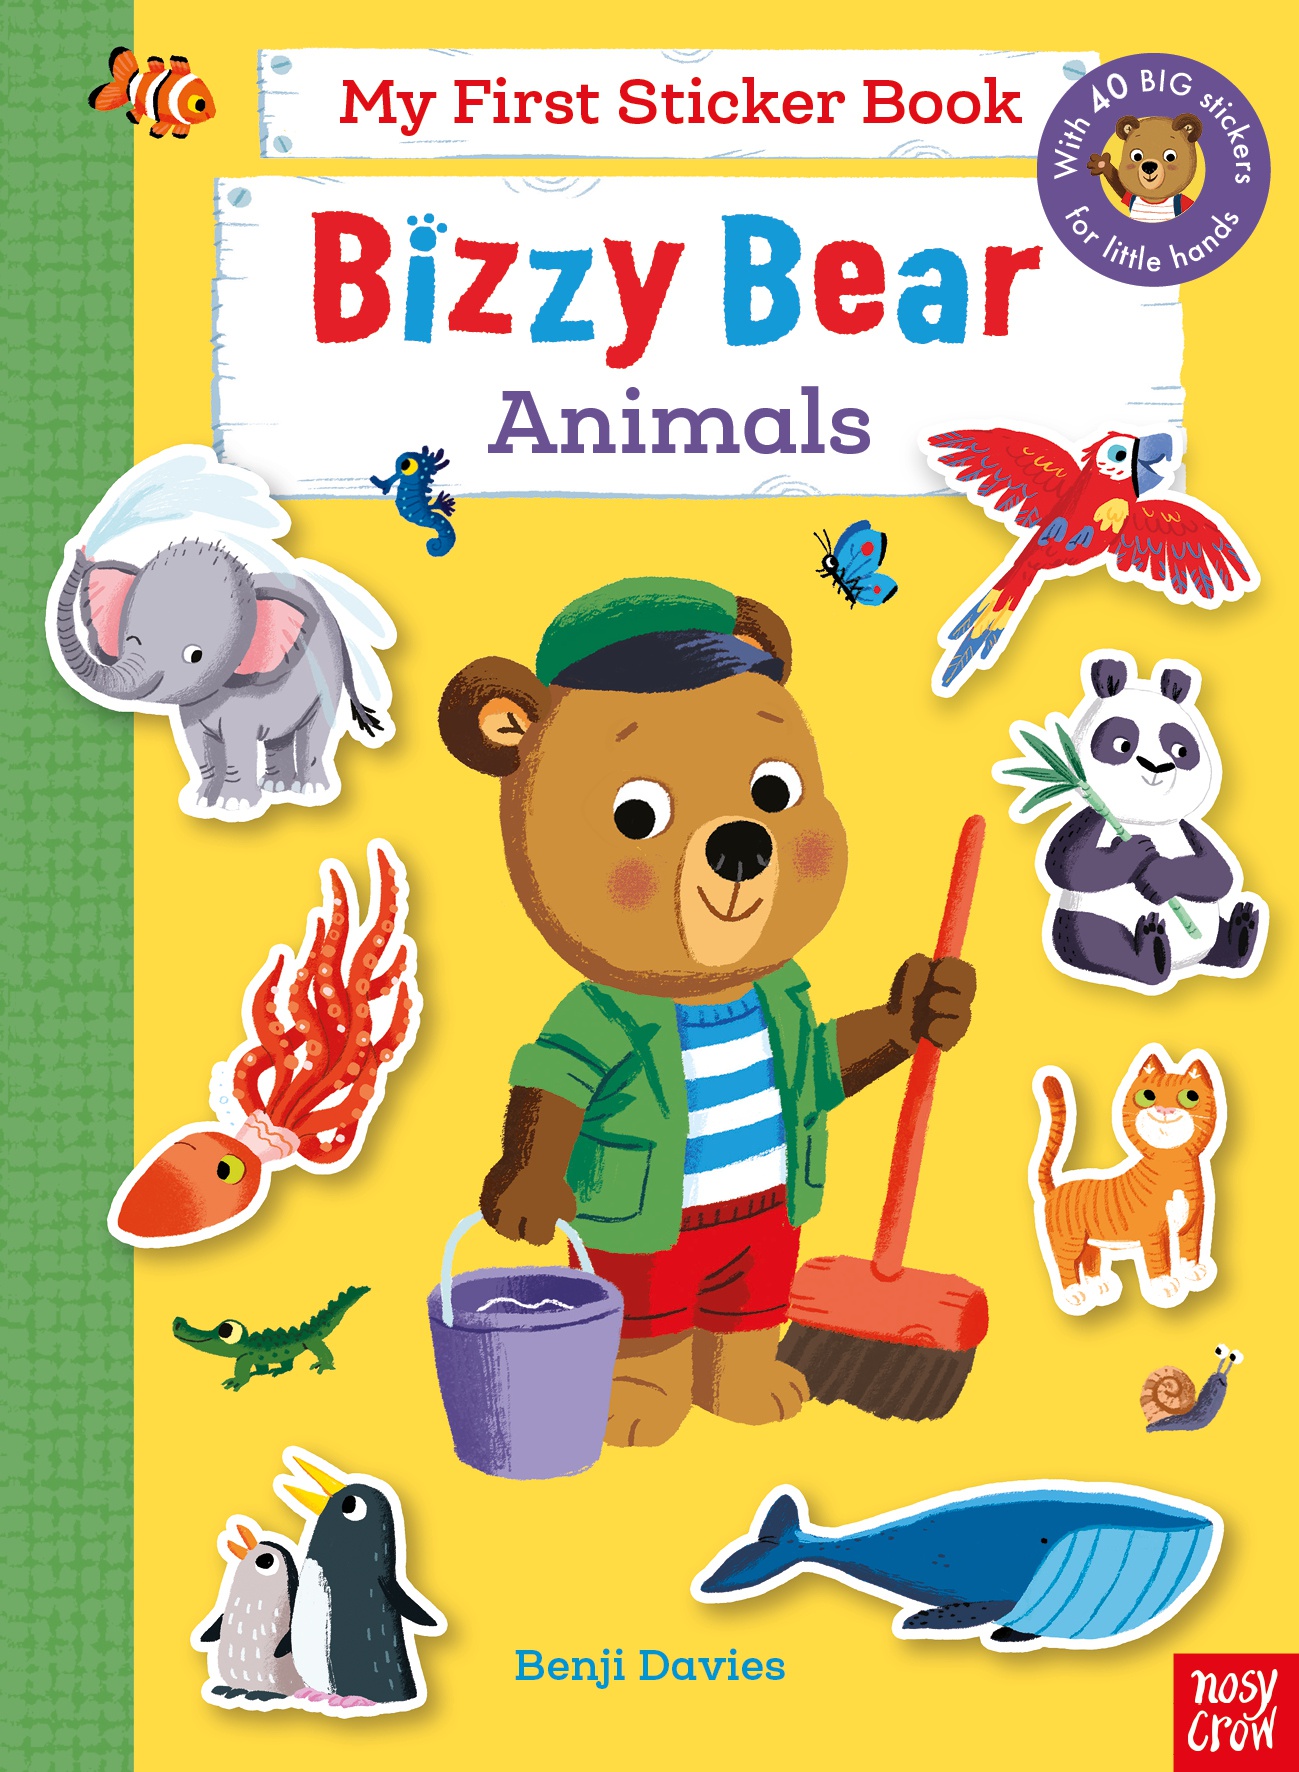 Εκδόσεις Nosy Crow - Bizzy Bear:My First Sticker Book Animals - Benji Davies